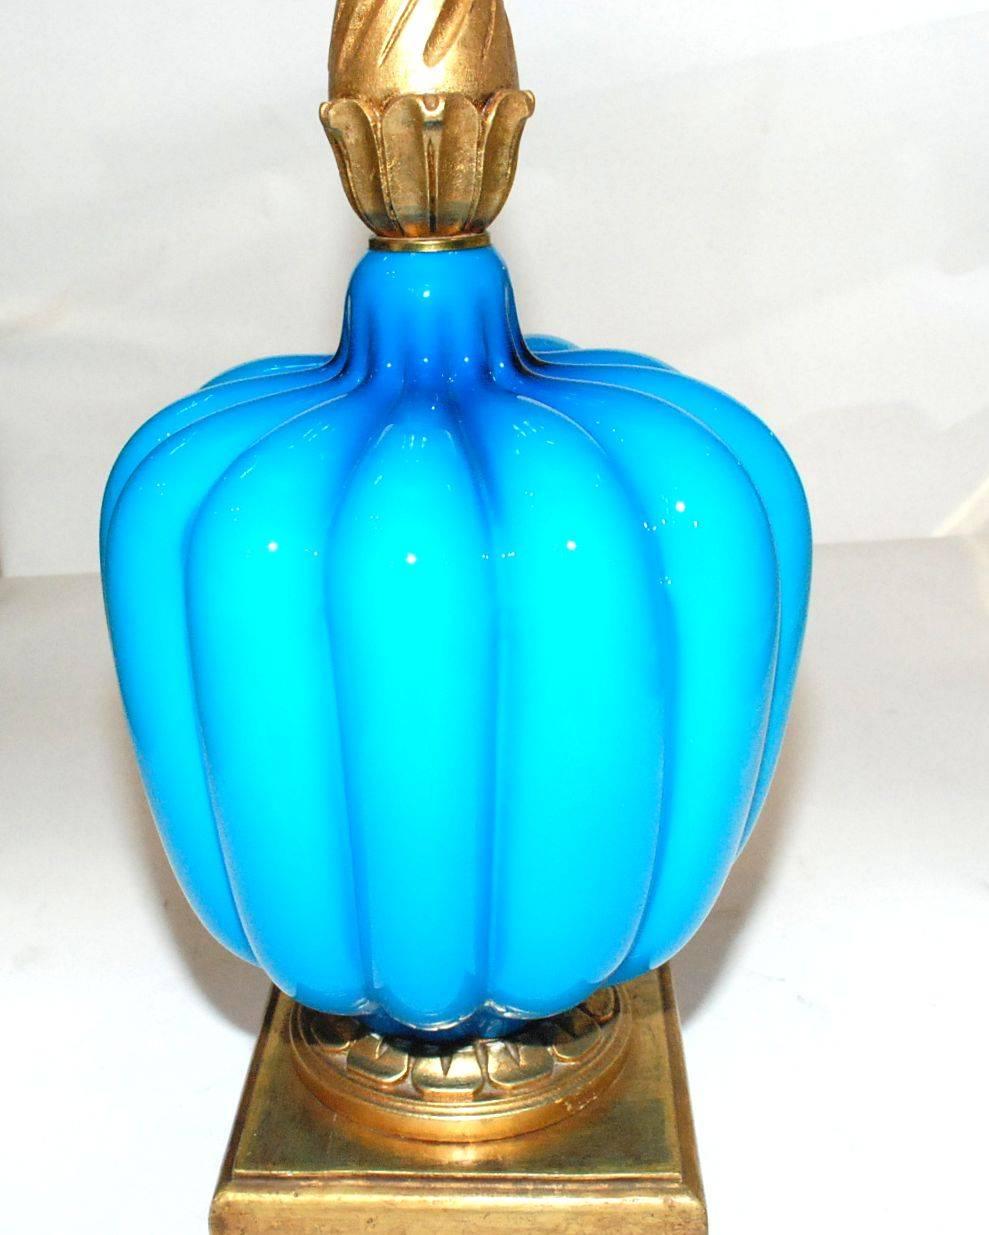 1960s Italian turquoise Murano glass with gildwood base.